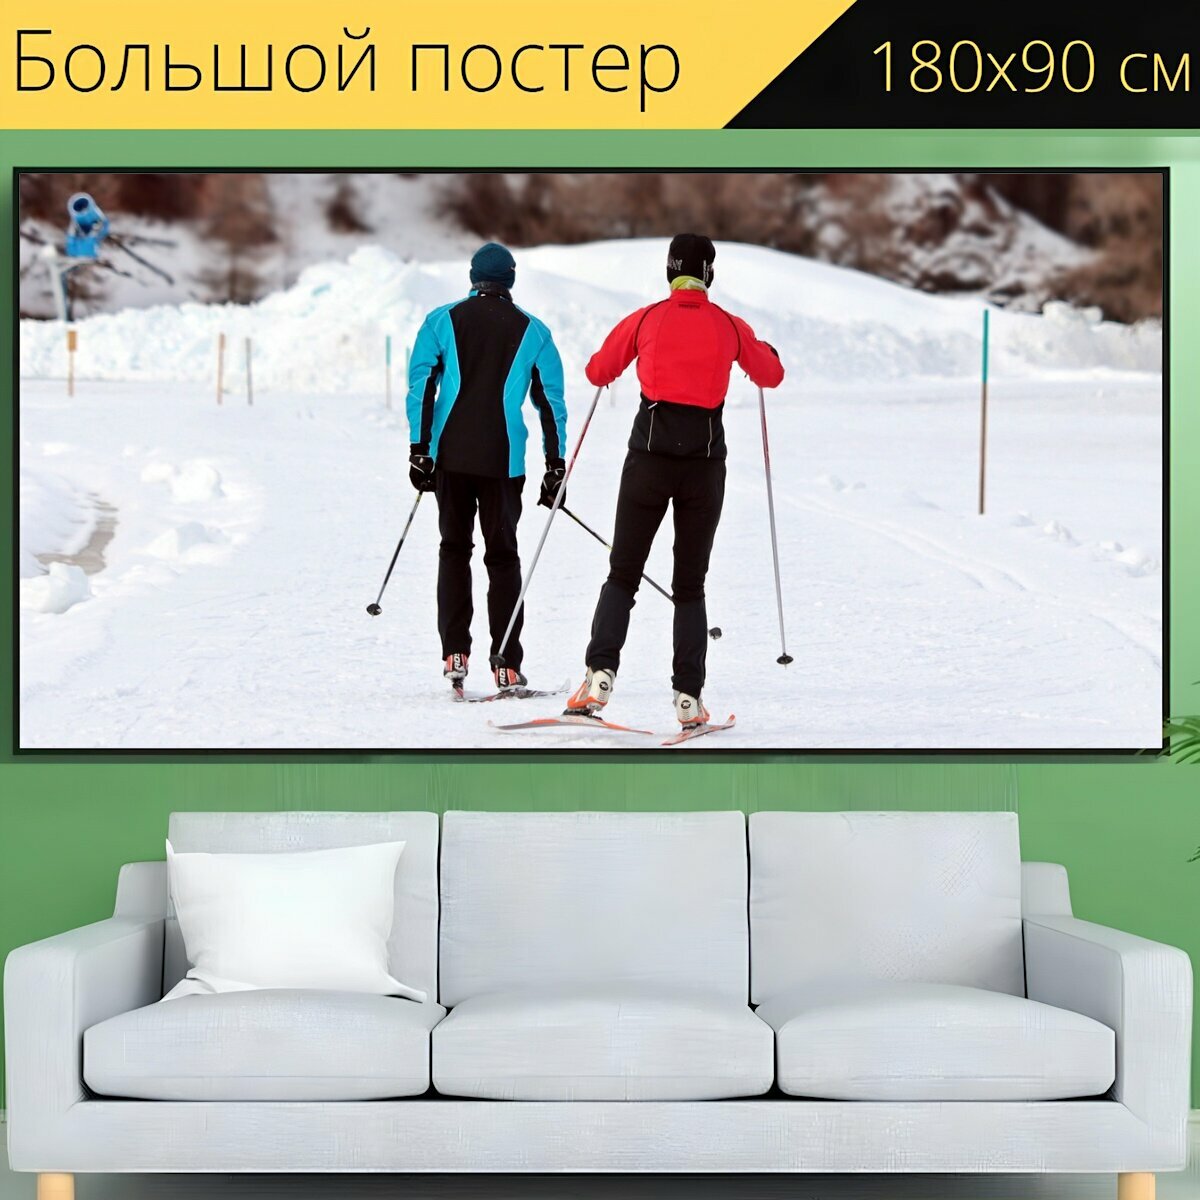 Большой постер "Беговые лыжи, зима, лыжные гонки" 180 x 90 см. для интерьера